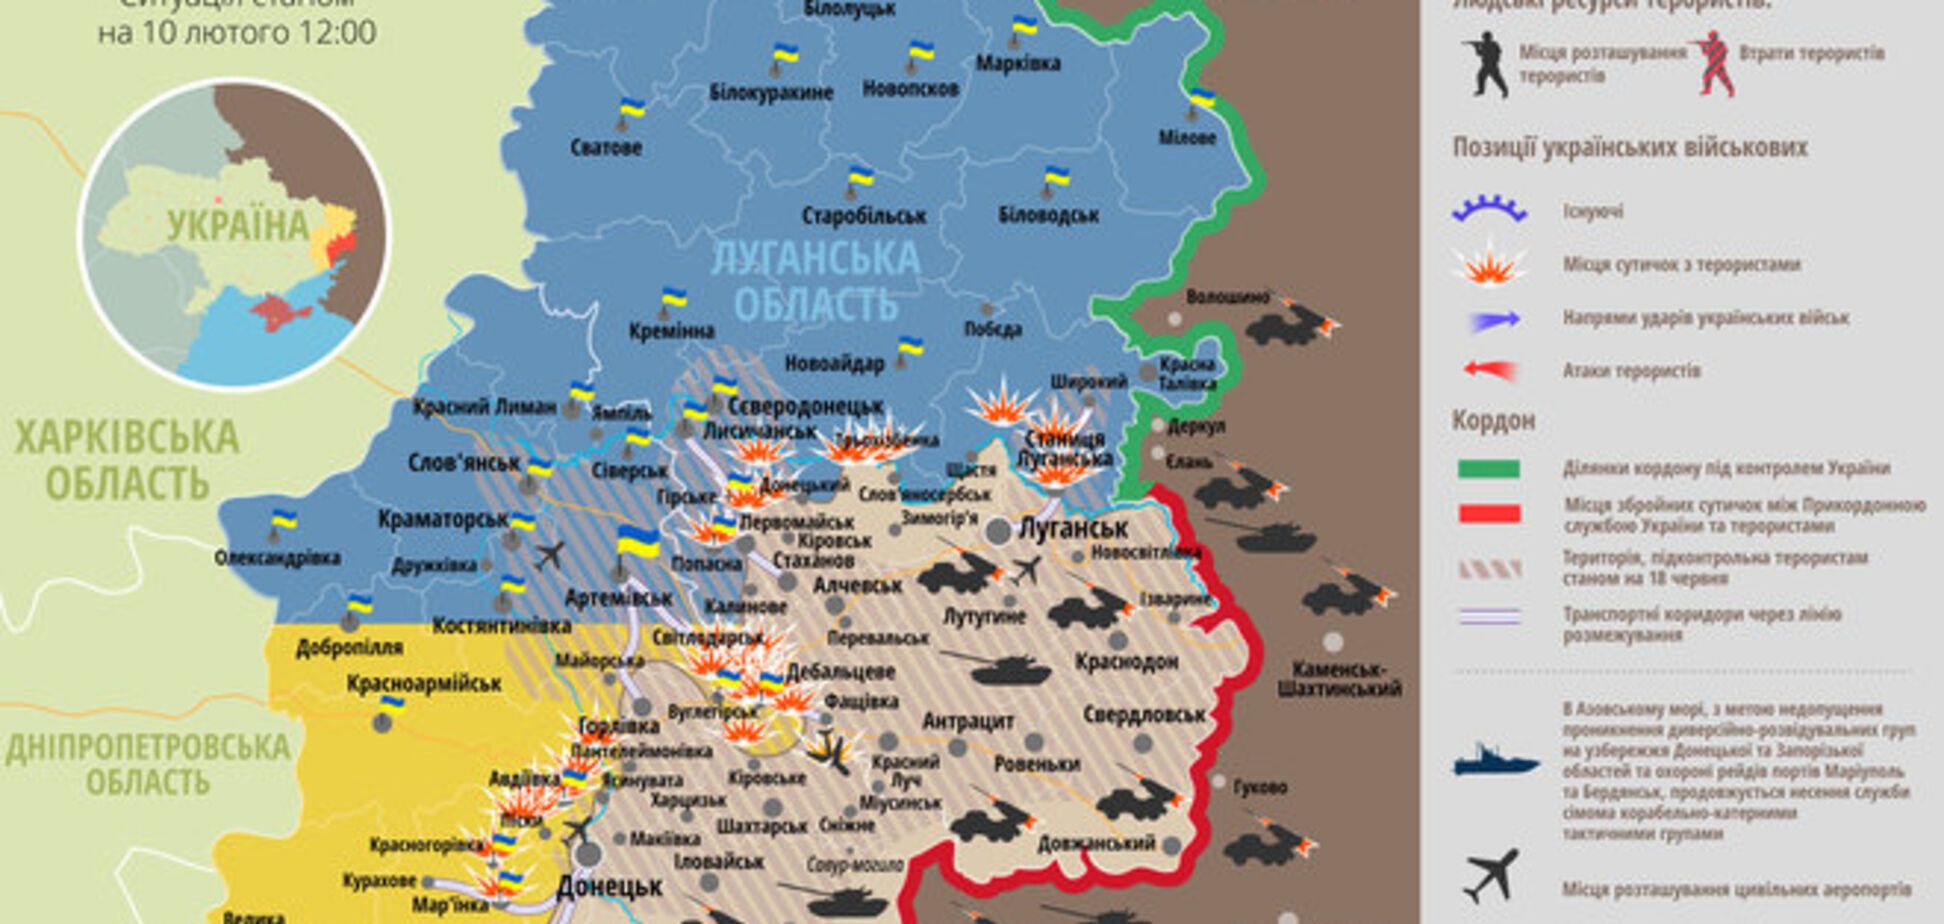 На Донбассе увеличилось количество российских военных: карта АТО